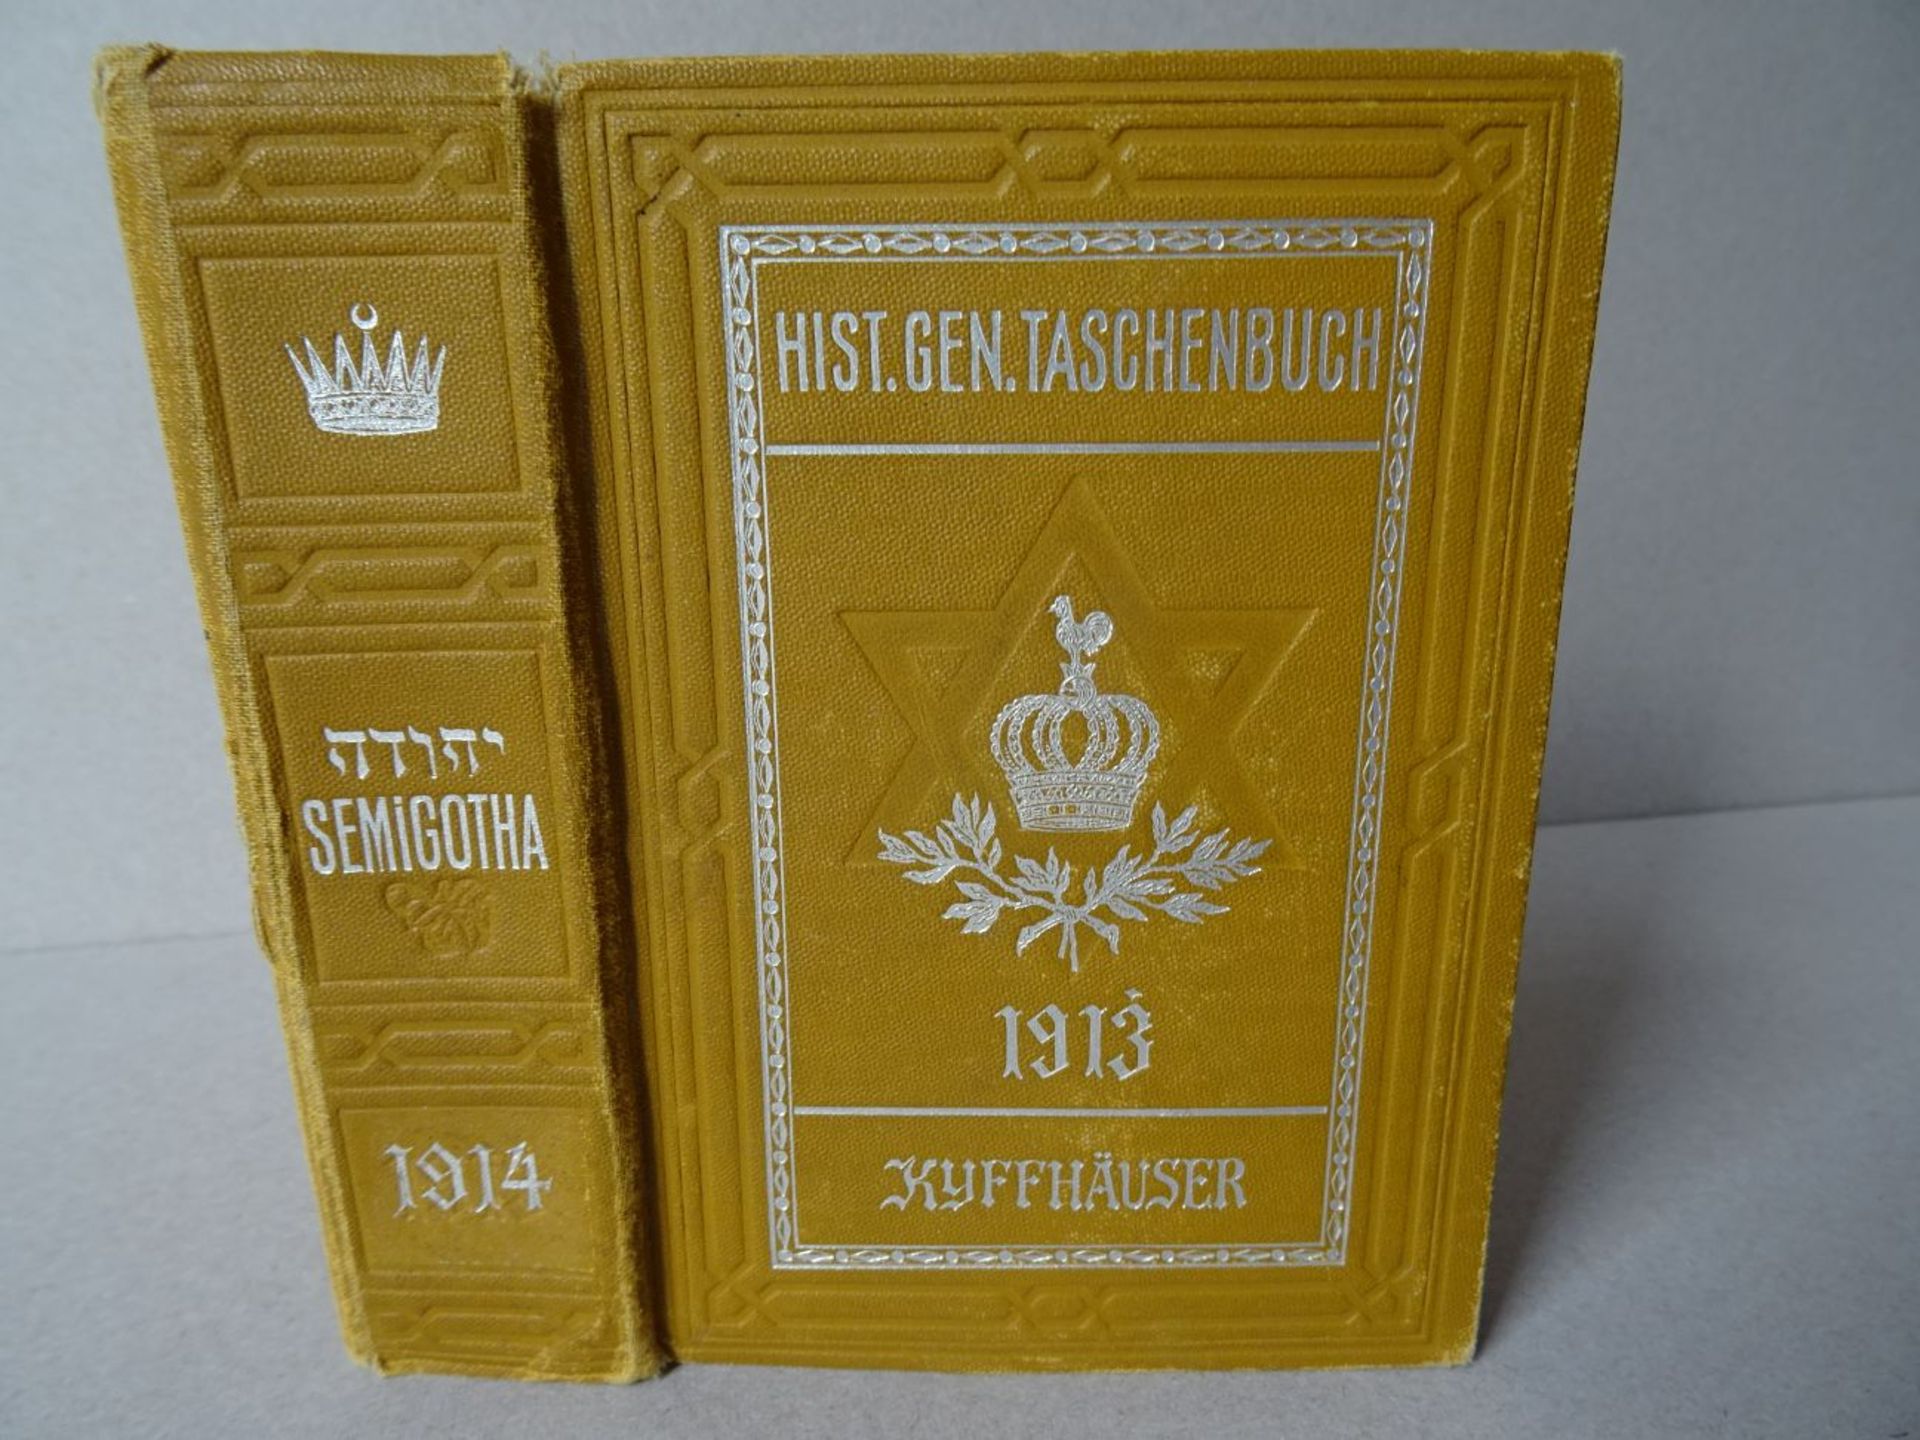 Weimarer genealoges Taschenbuch, 1913 - Bild 5 aus 5